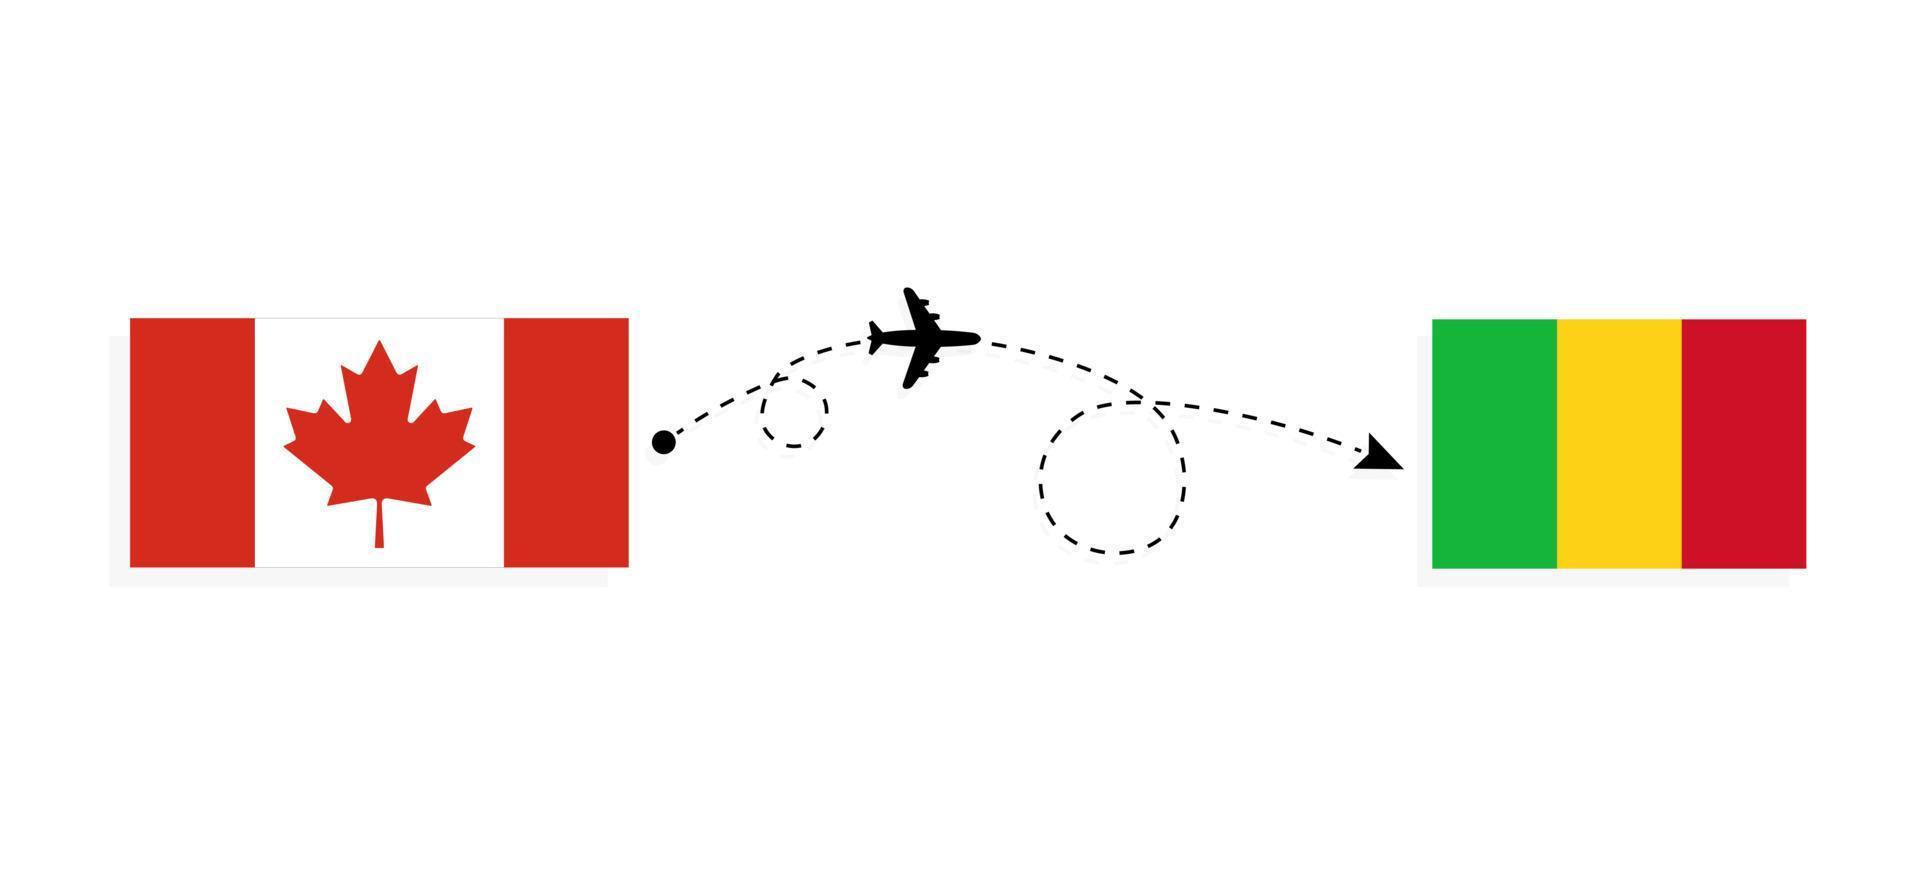 flyg och resor från Kanada till Mali med passagerarflygplan vektor